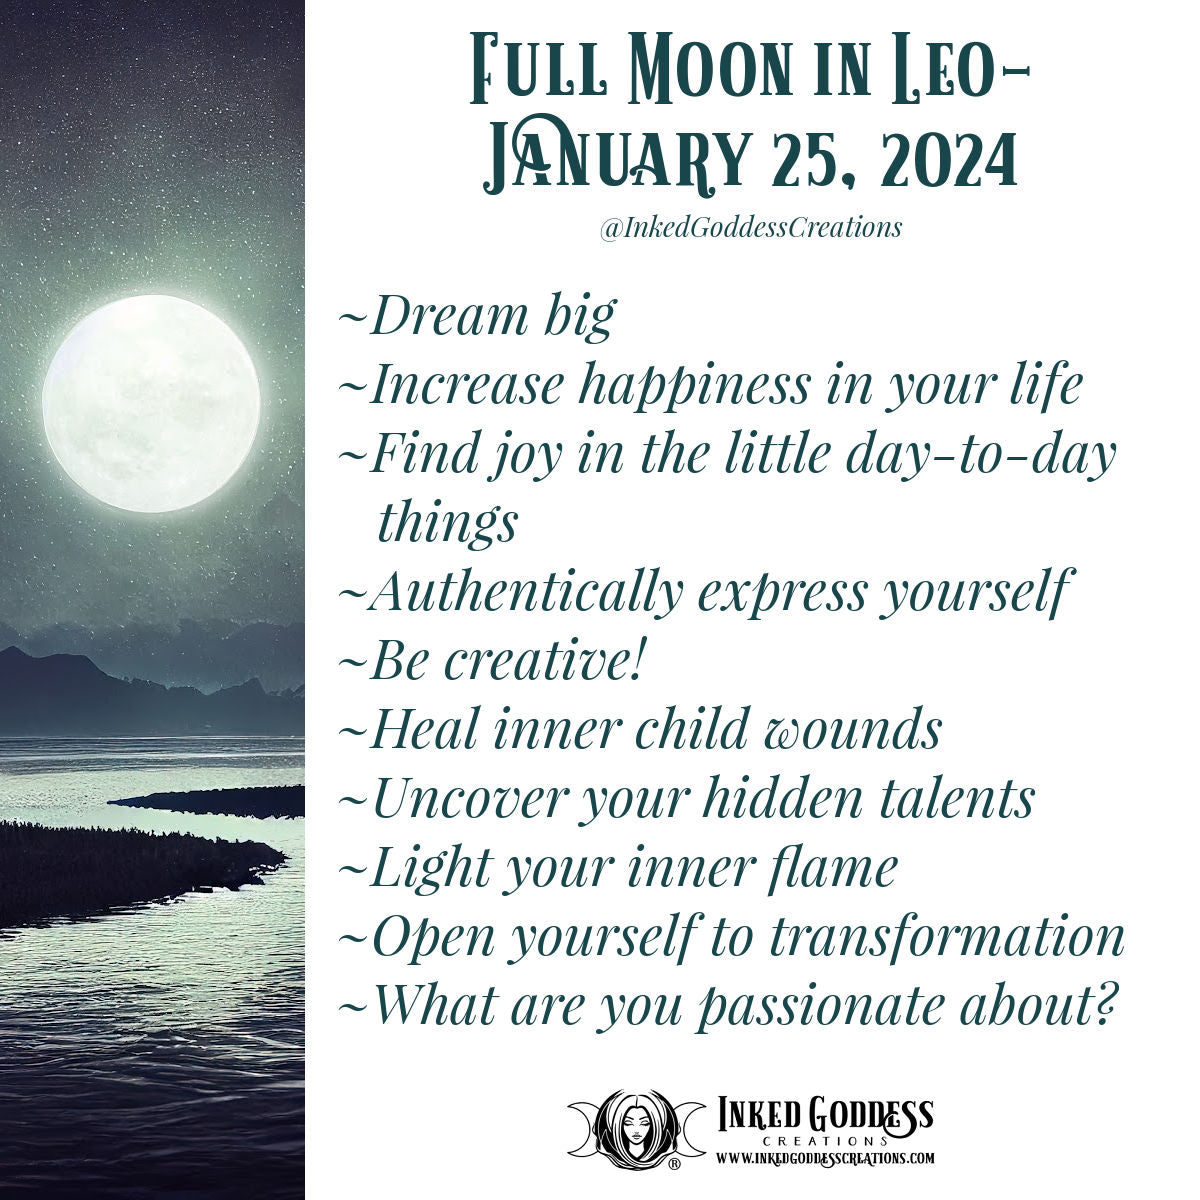 Full Moon in Leo- January 25, 2024